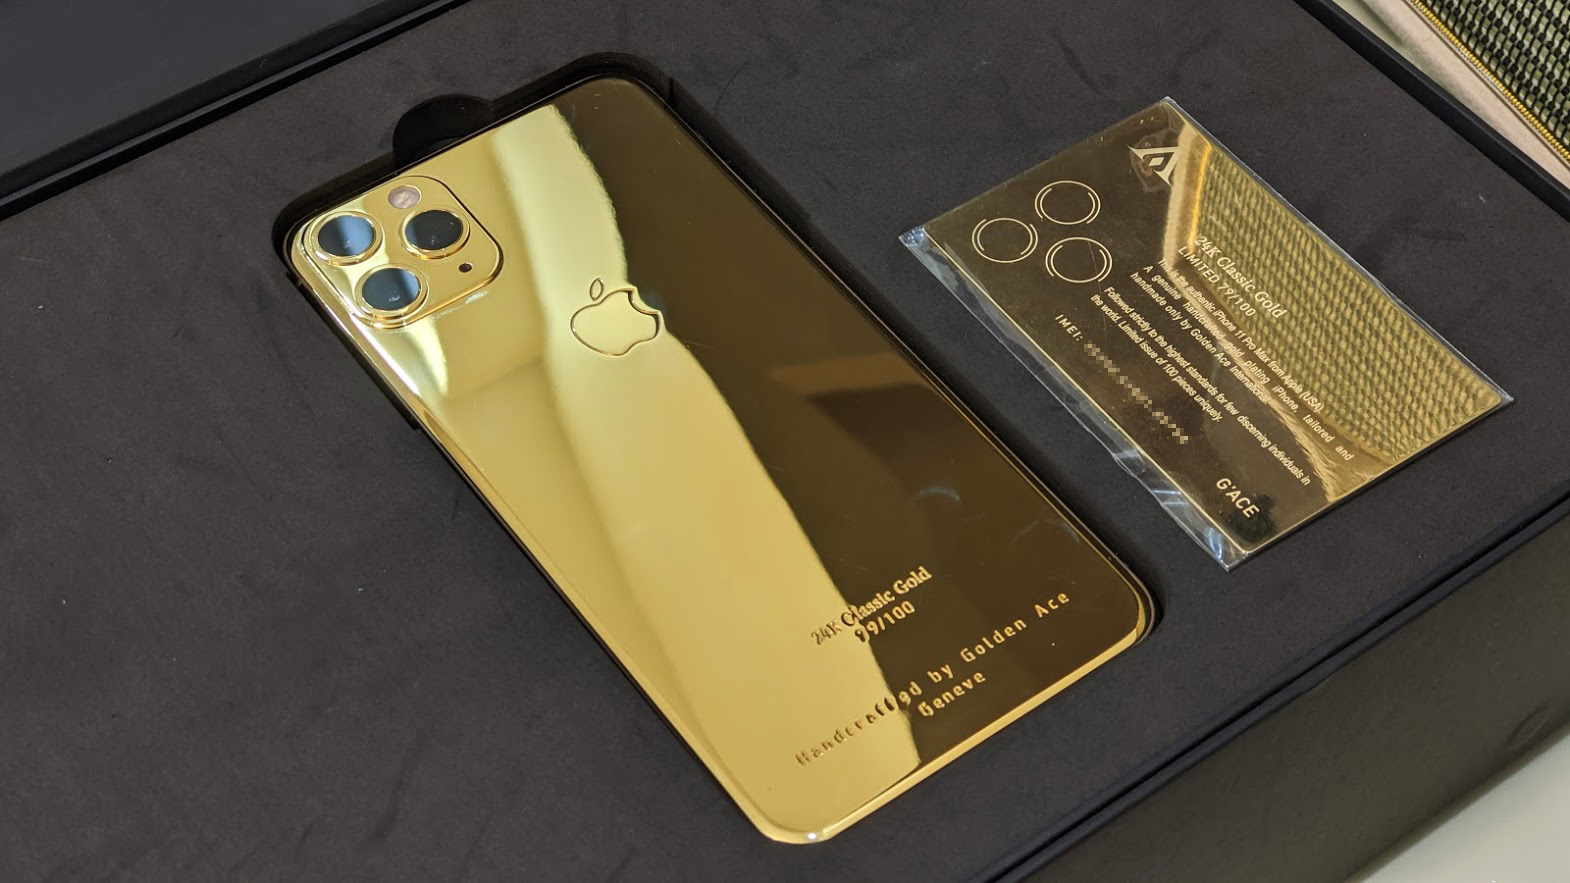 iPhone 11 Pro Max mạ vàng 24K: Chiếc điện thoại hoàn hảo cho những người yêu thích sự đẳng cấp và sang trọng. Đây là một trong những phiên bản iPhone đẹp nhất từ trước đến nay với màu mạ vàng 24K.